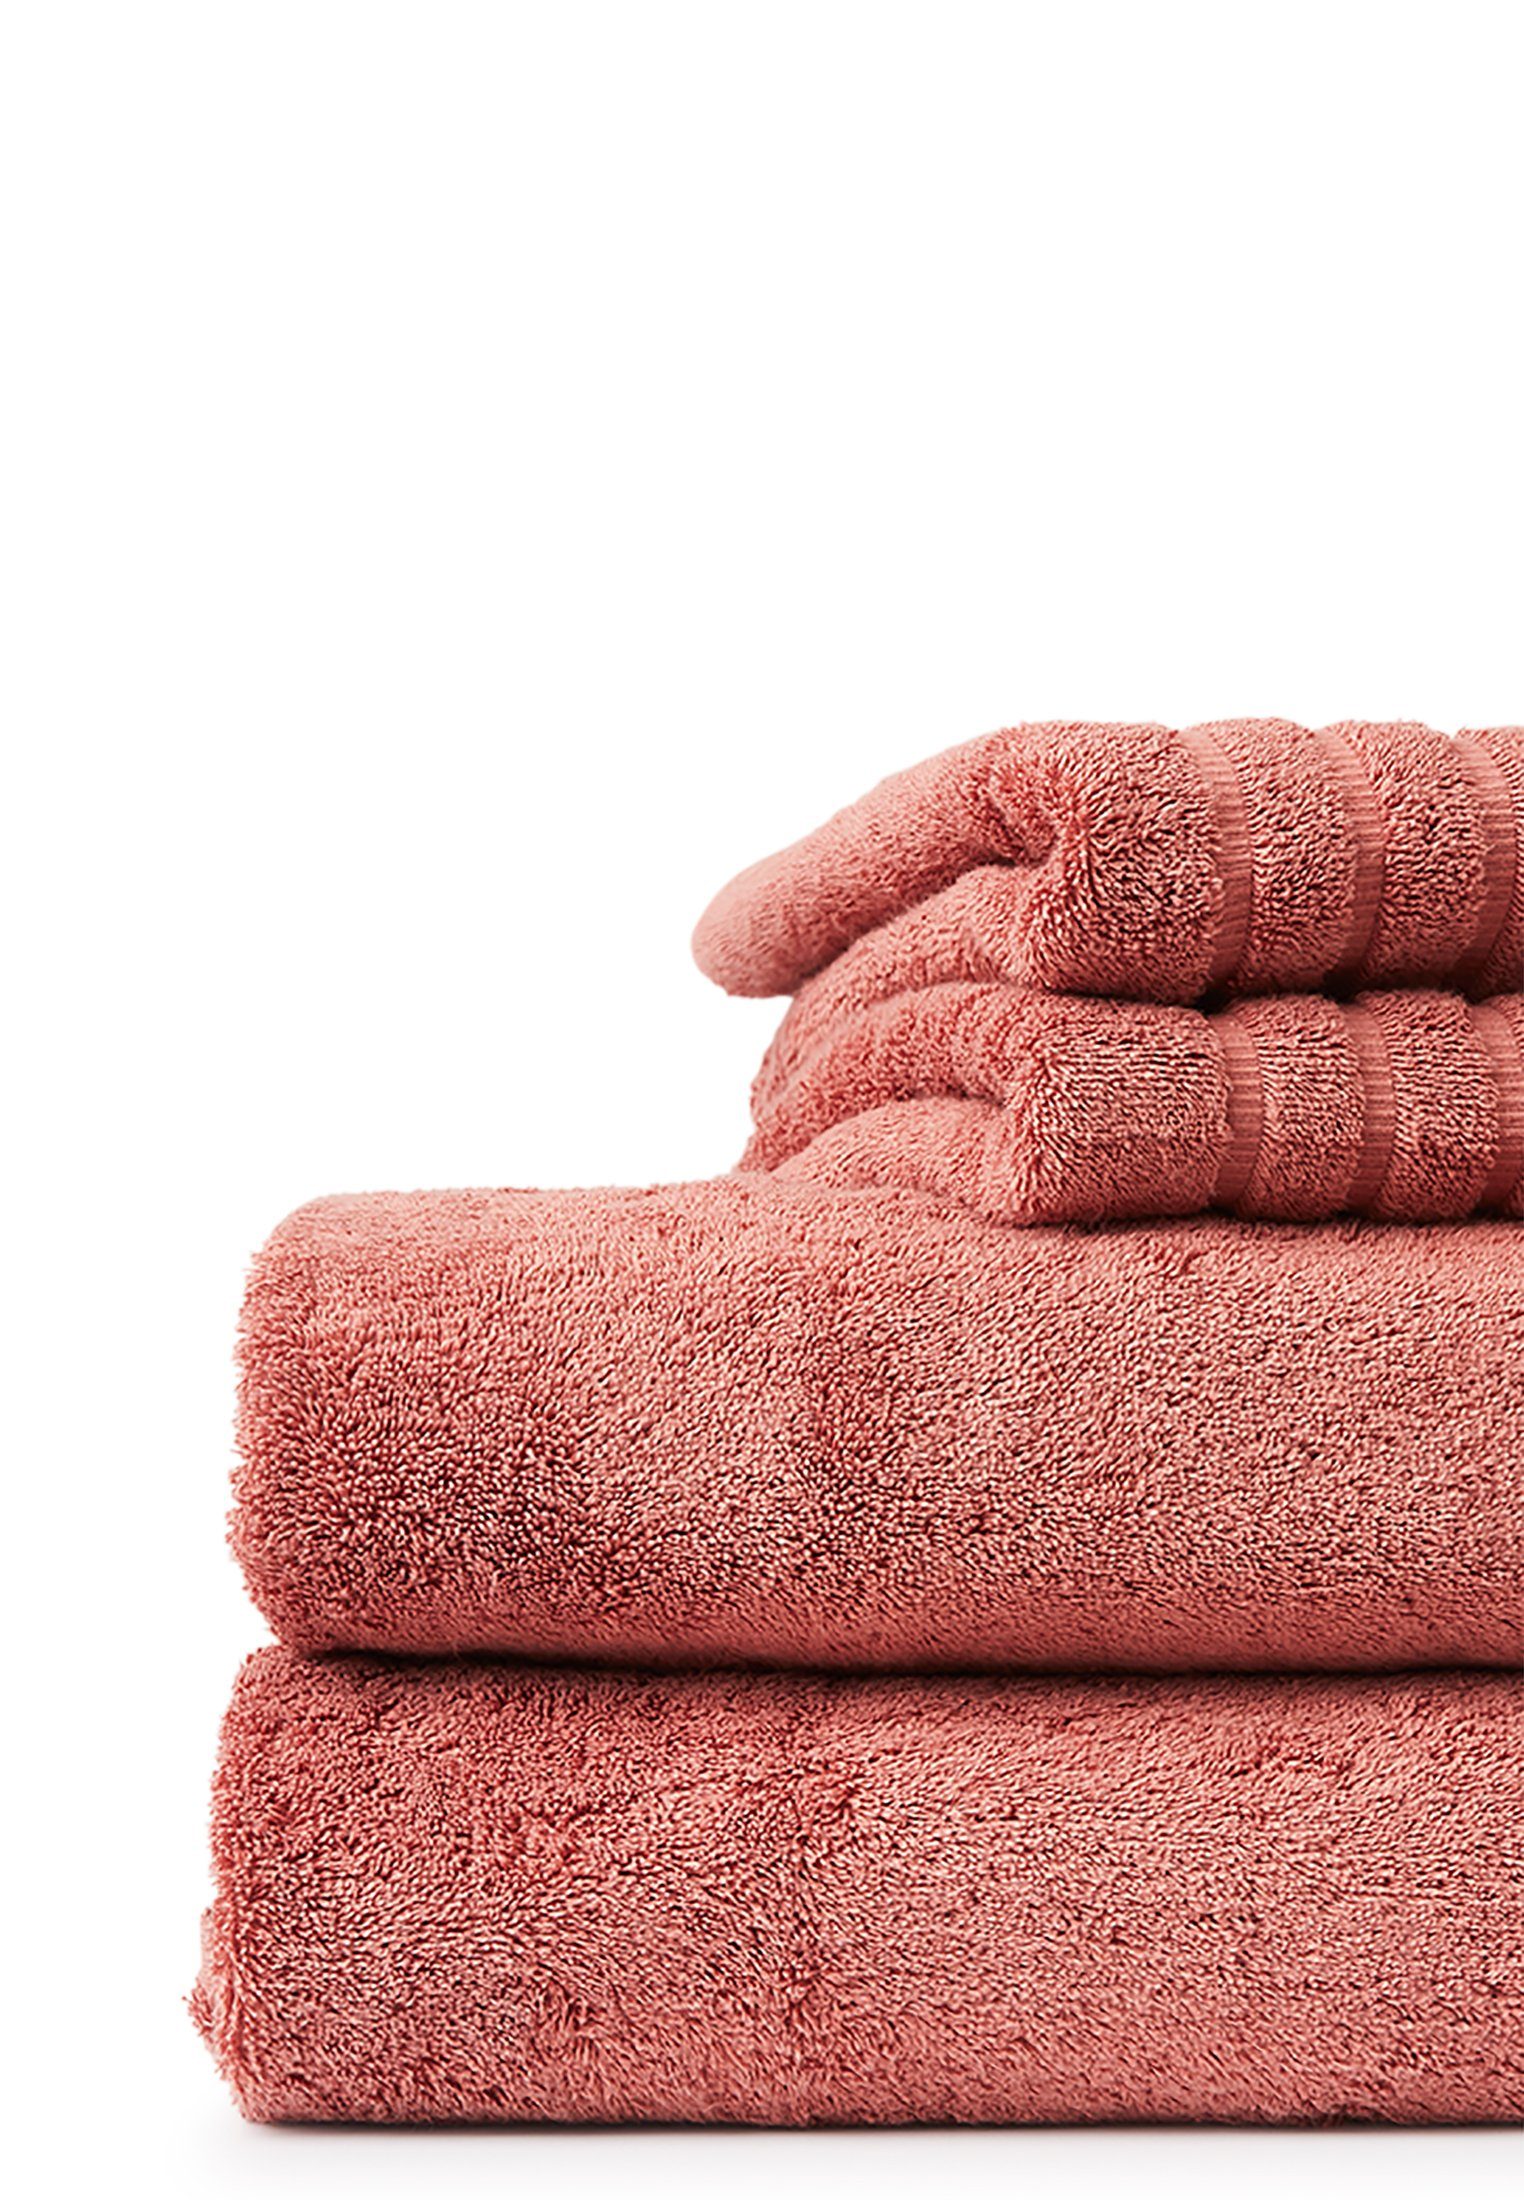 Lexington Original antique Towel pink Handtuch